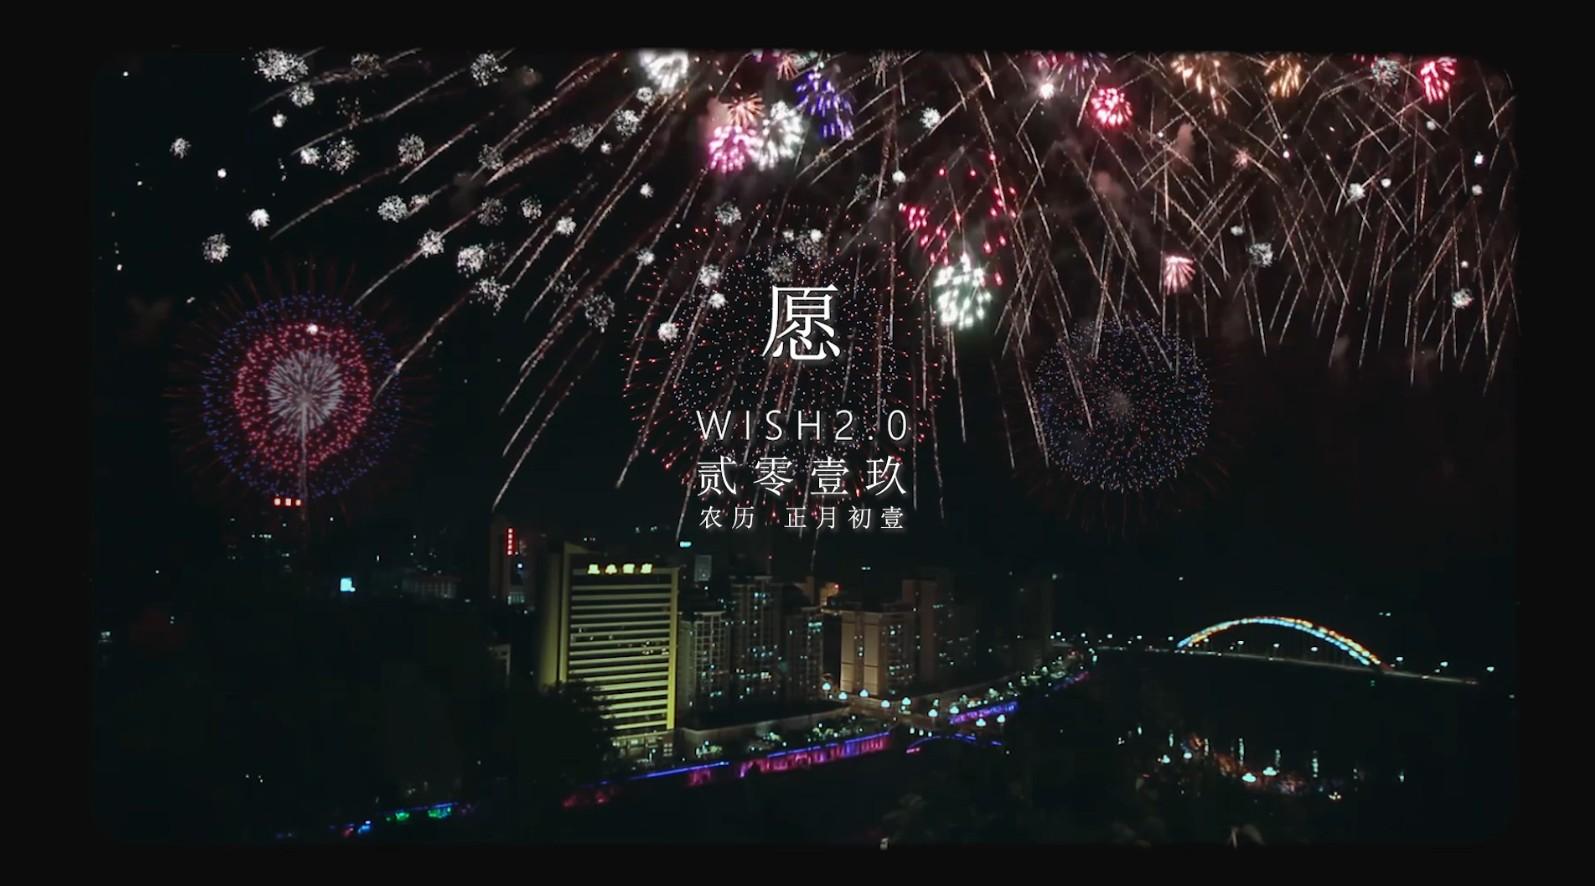 2019梧州贺年短片《愿wish 2.0》